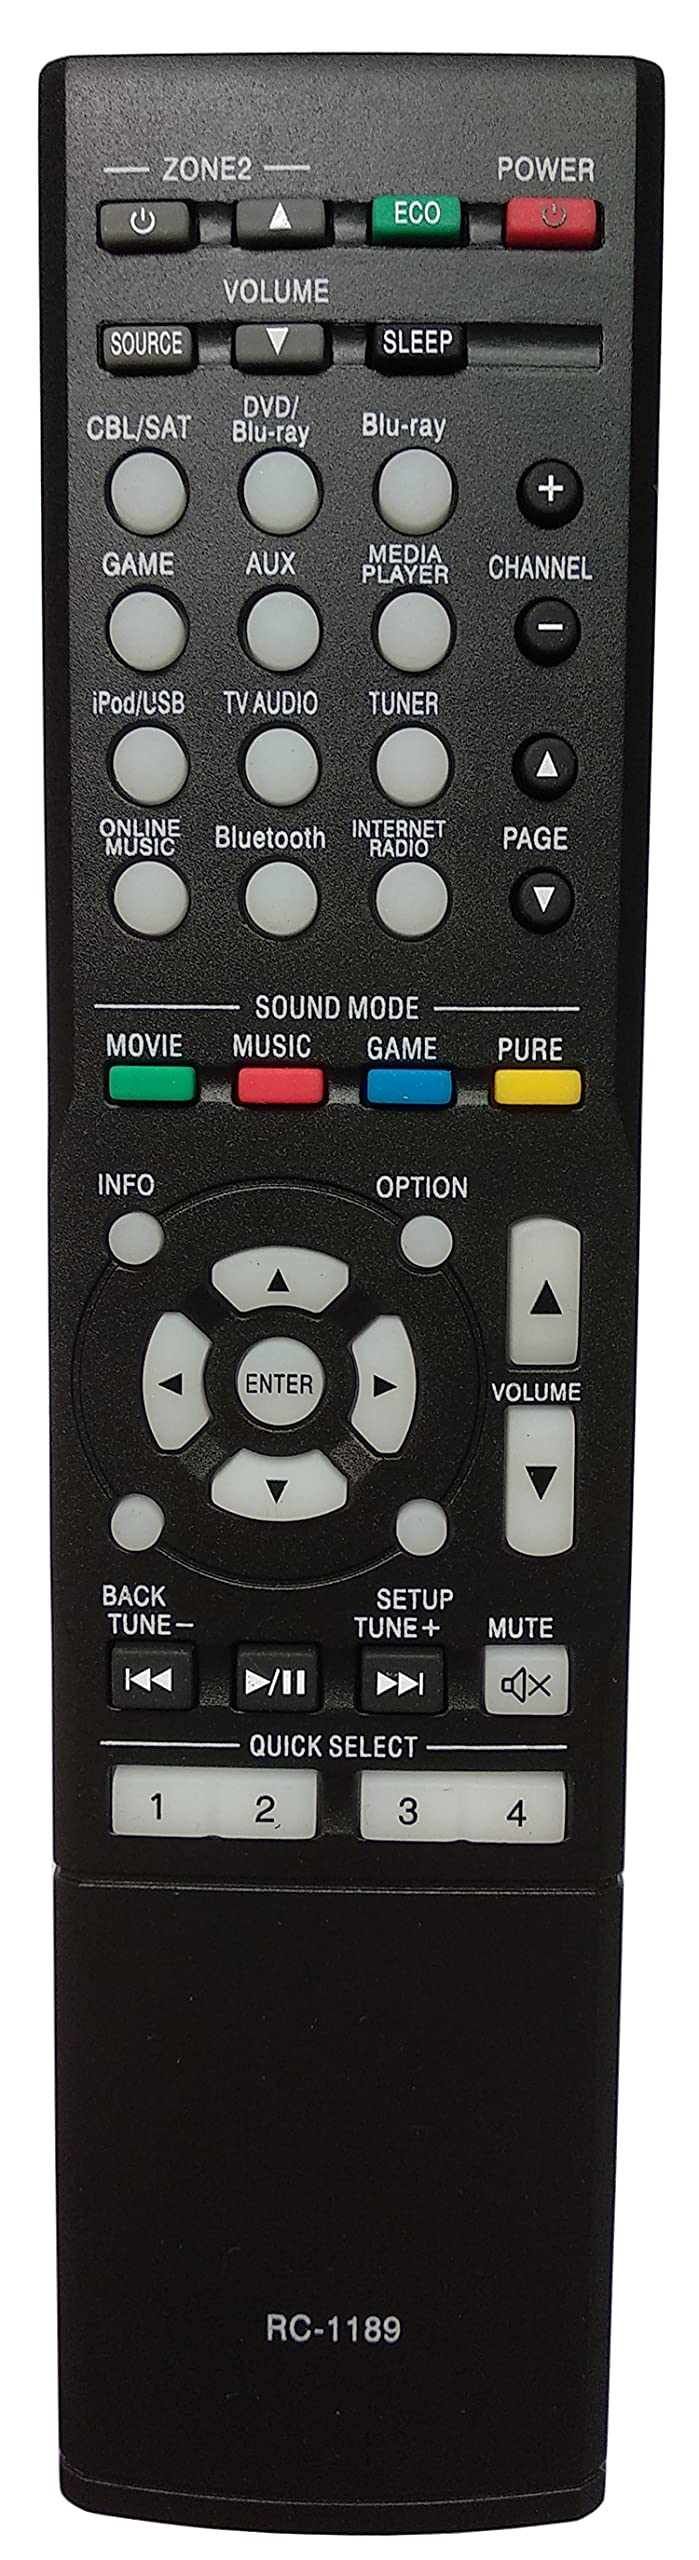  [AUSTRALIA] - Gorilla babo Universal Remote Compatible for DENON RC-1189 AVR-S700W AVR-S710W AVR-X1100 AVR-X1100W AVR-X1200W Audio/Video Receiver Remote Control